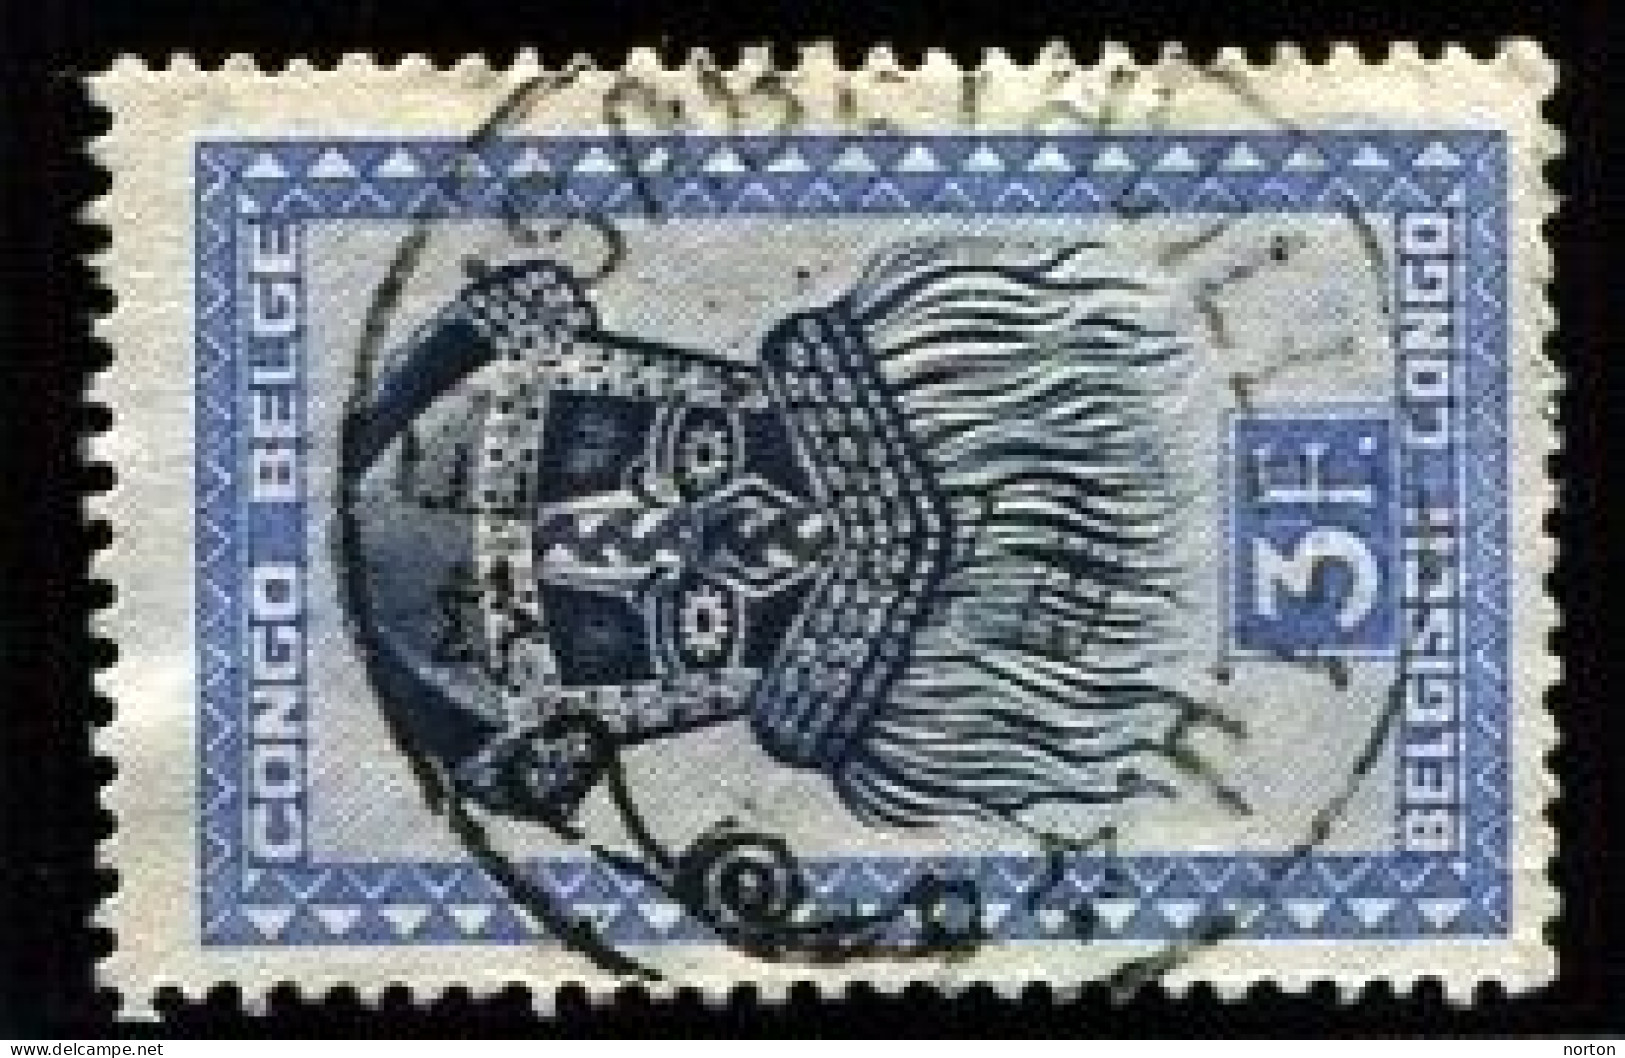 Congo Elisabethville 1 Oblit. Keach 10(.J.) Sur C.O.B. 288A Le 27/12/1947 - Gebraucht